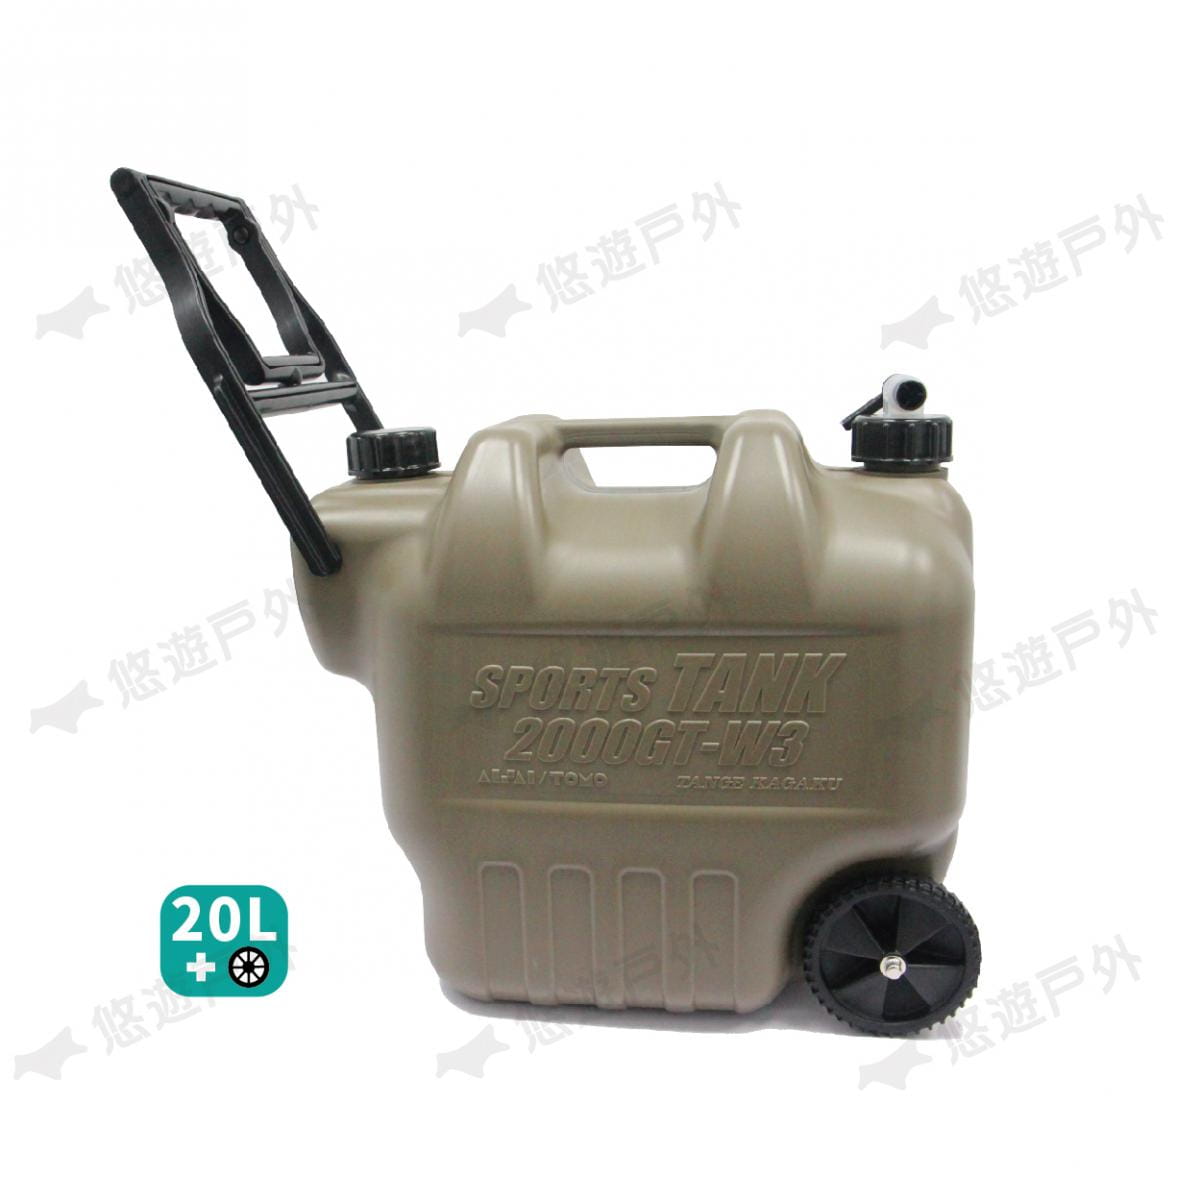 【悠遊】日製水桶 20L 帶輪子 水箱 儲水桶 飲水桶 重型載水器 軍式風 風格選物 多用途水箱 8